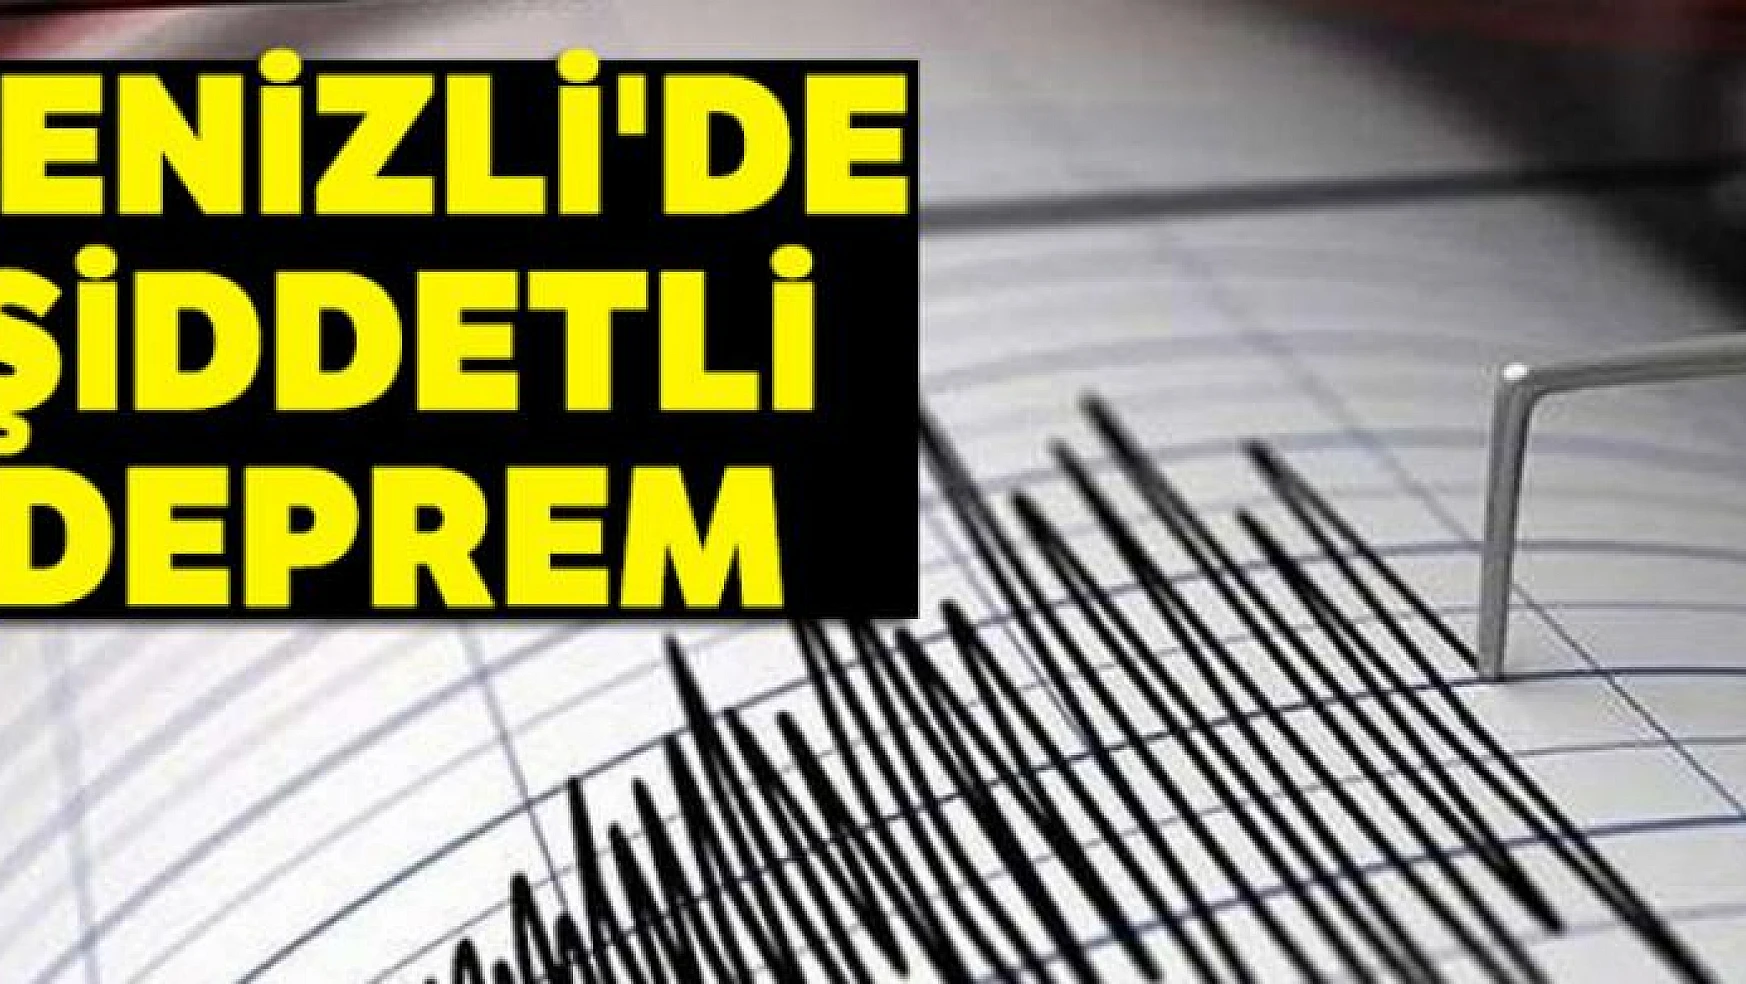 Denizli'de şiddetli deprem |Son depremler...